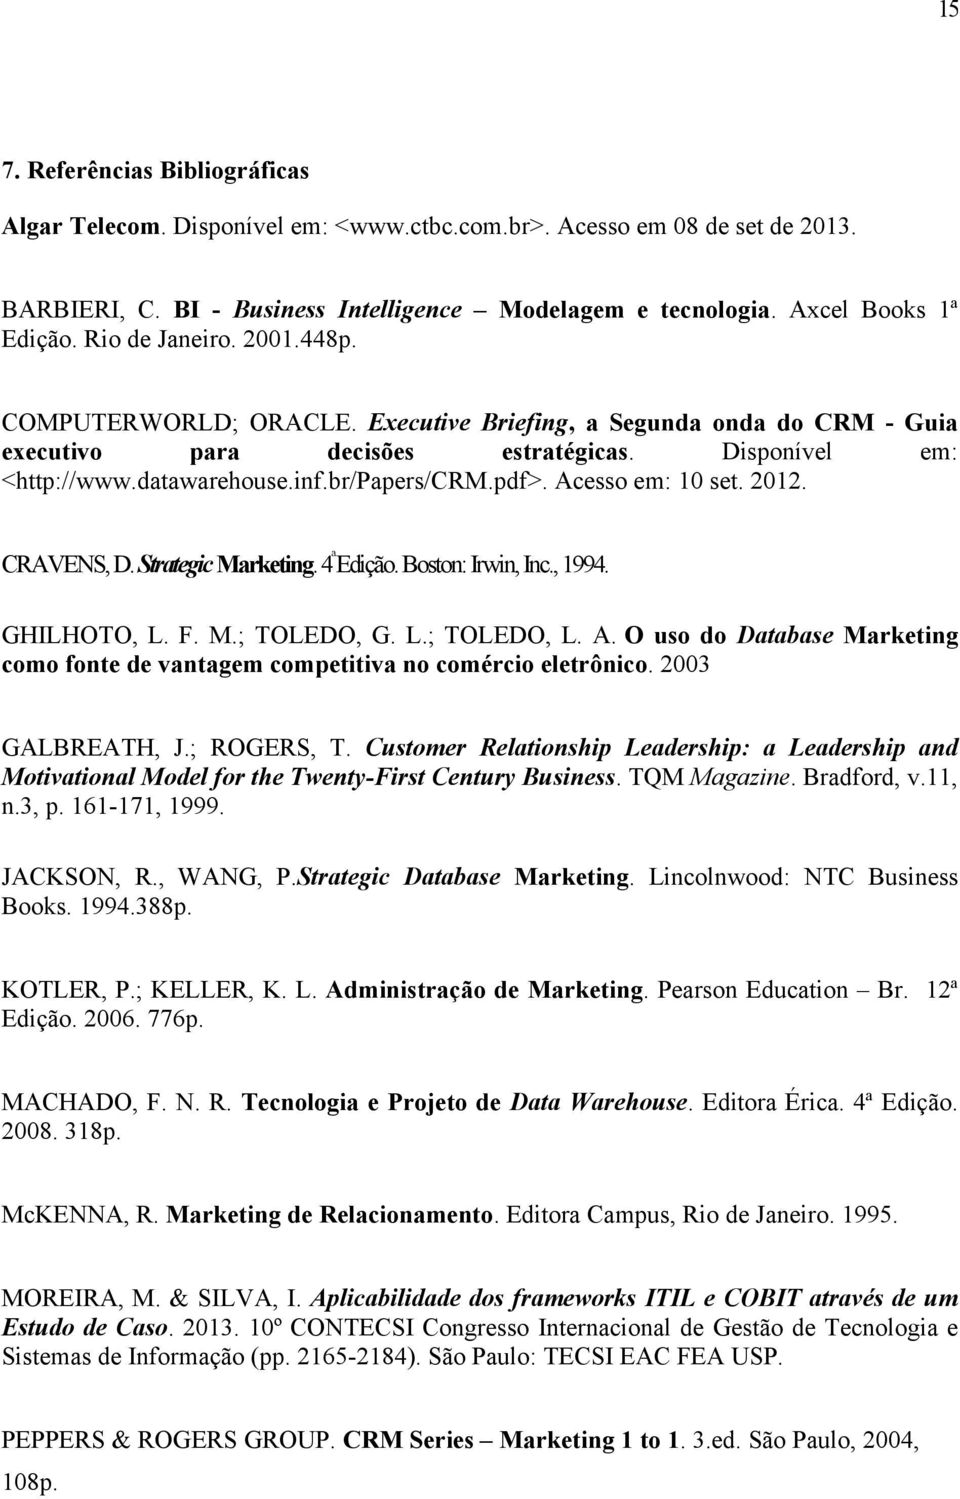 pdf>. Acesso em: 10 set. 2012. CRAVENS, D. Strategic Marketing. 4 ª Edição. Boston: Irwin, Inc., 1994. GHILHOTO, L. F. M.; TOLEDO, G. L.; TOLEDO, L. A. O uso do Database Marketing como fonte de vantagem competitiva no comércio eletrônico.